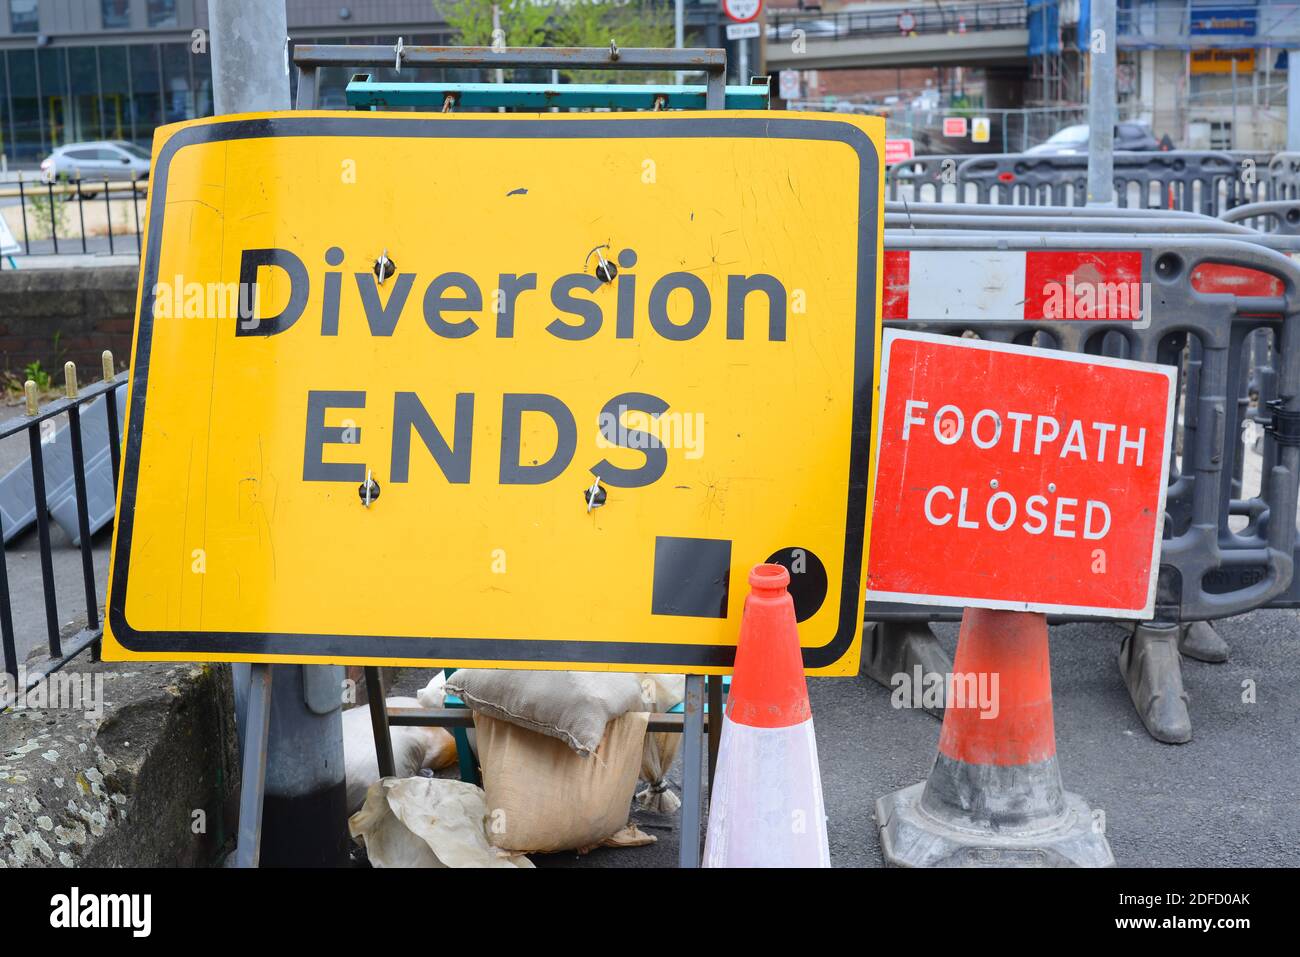 Umleitung endet und Fußweg geschlossen Warnschild für Fußgänger an Straßenarbeiten in Leeds Yorkshire Vereinigtes Königreich Stockfoto